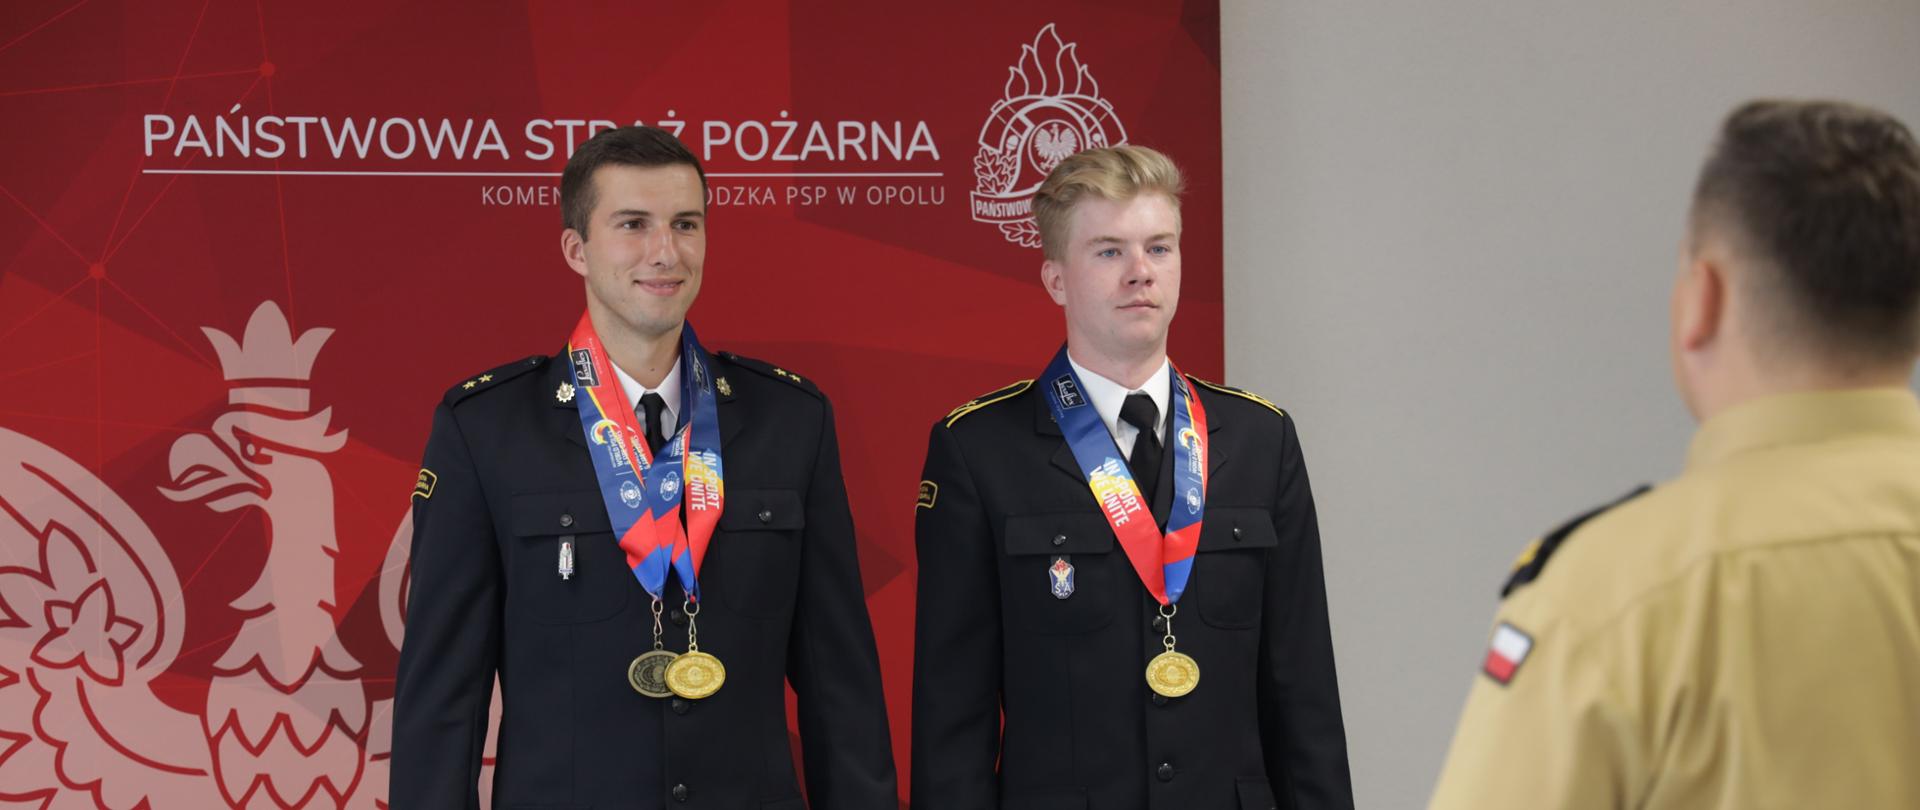 Zdjęcie przedstawia mł. kpt. Jakuba Korczyka oraz asp. Oskara Ułamka podczas uroczystości wyróżnienia nagrodą Opolskiego Komendanta Wojewódzkiego